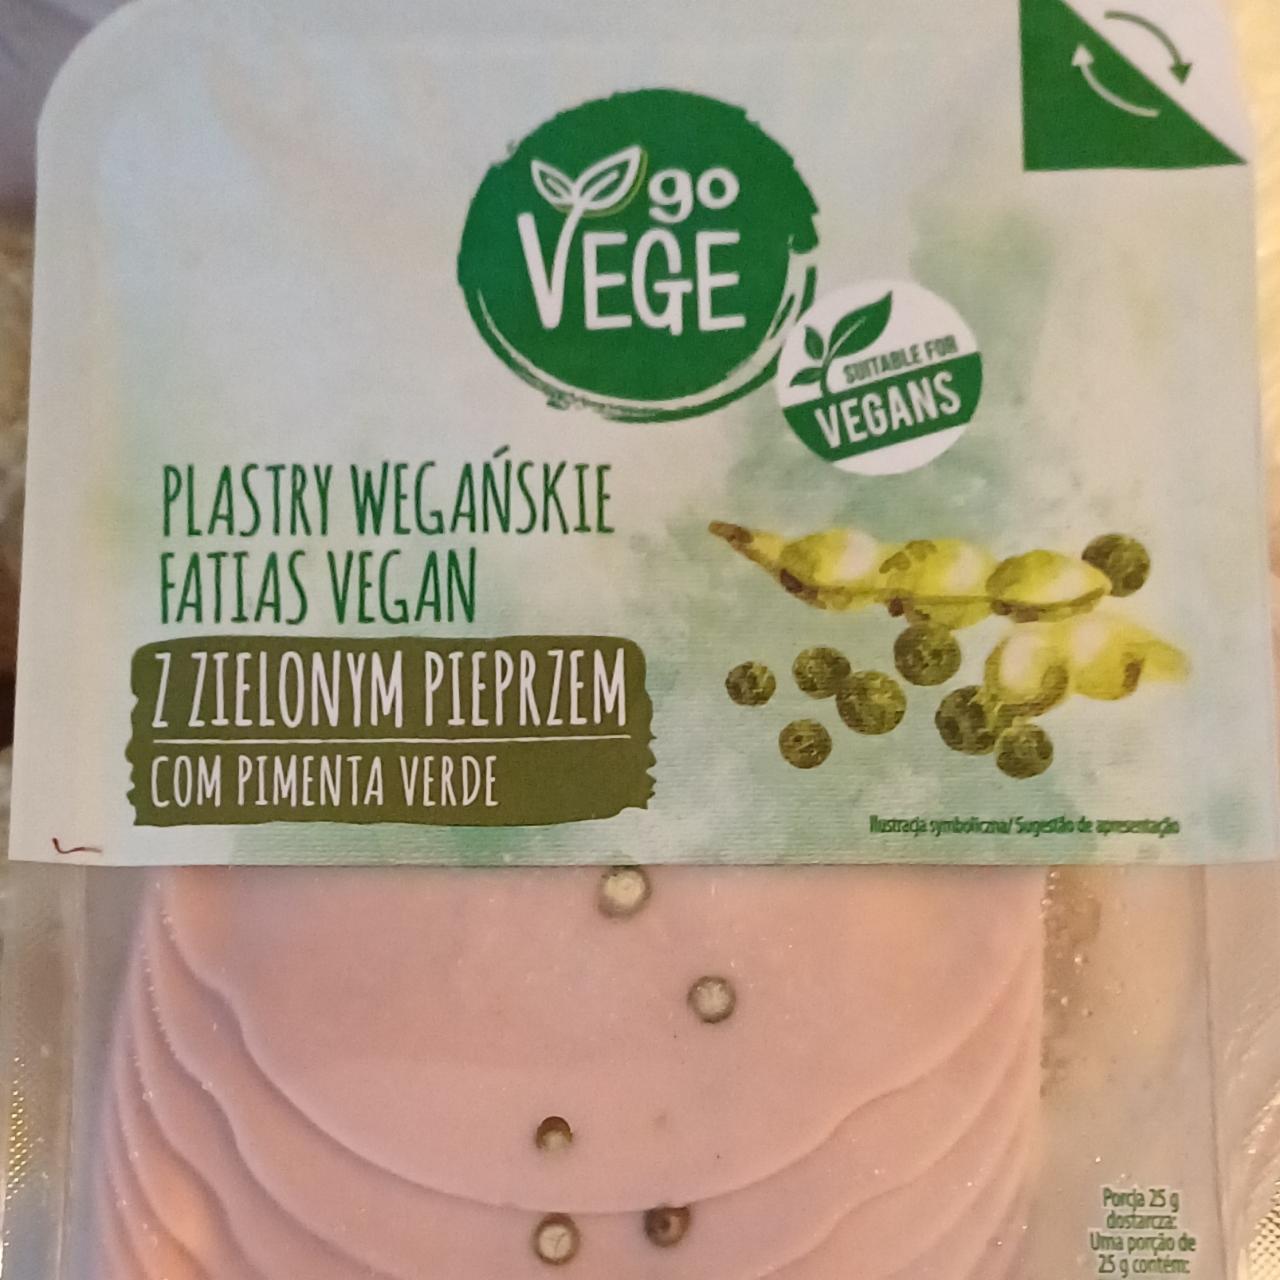 Фото - Plastry wegańskie z zielonym pieprzem go Vege